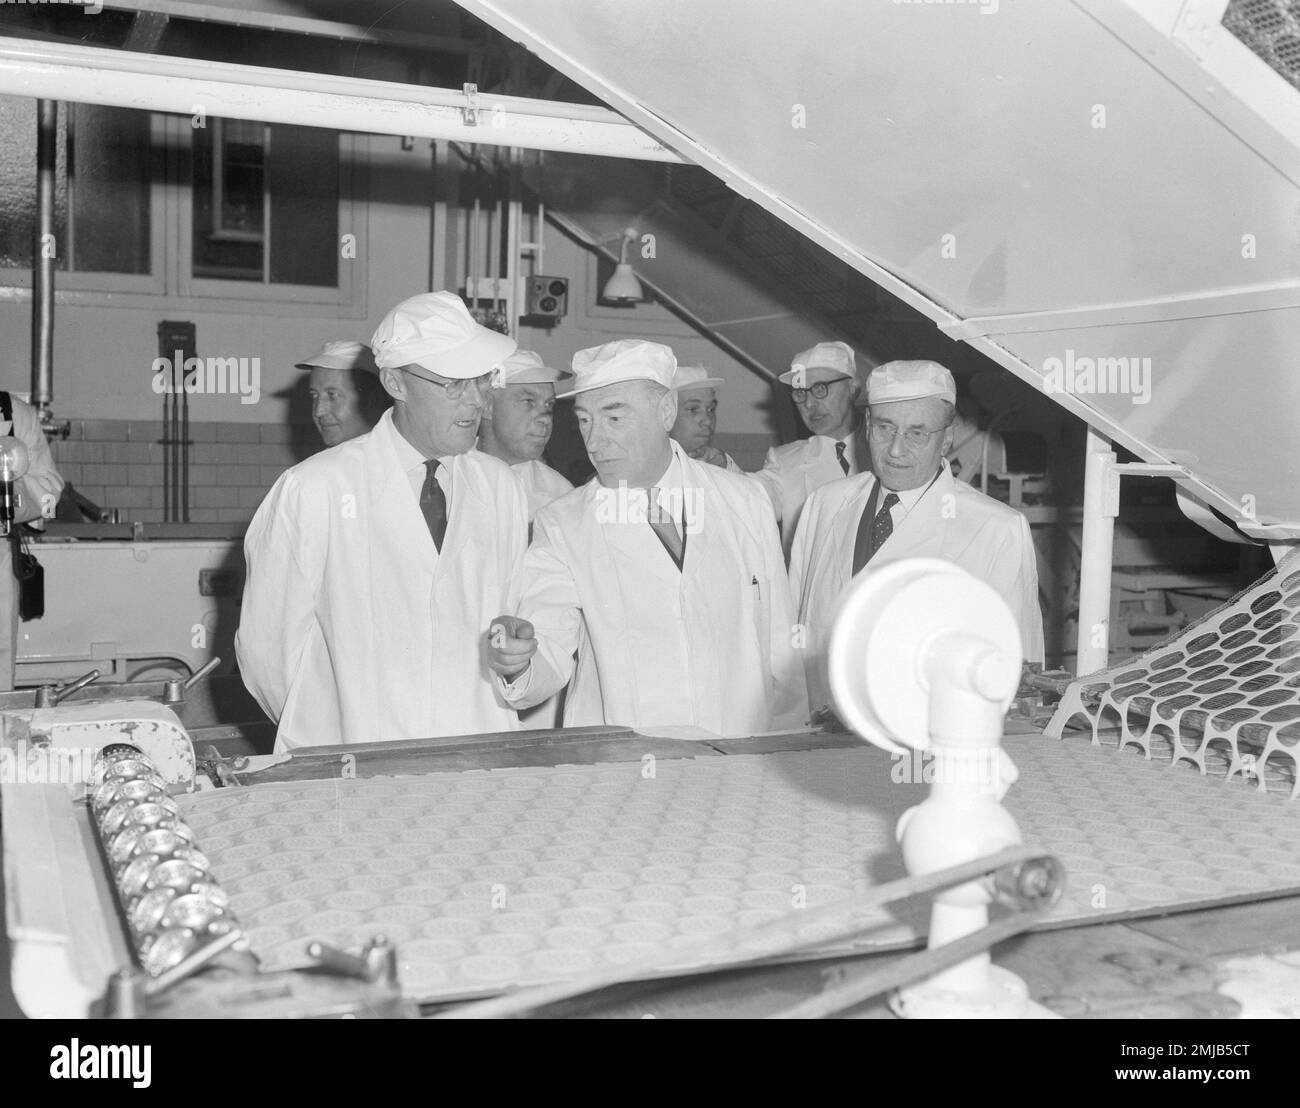 Storia dell'Olanda: Sua altezza reale il principe Bernhard ha fatto una visita di lavoro ad una fabbrica di cioccolato; Data: 18 aprile 1962 Foto Stock